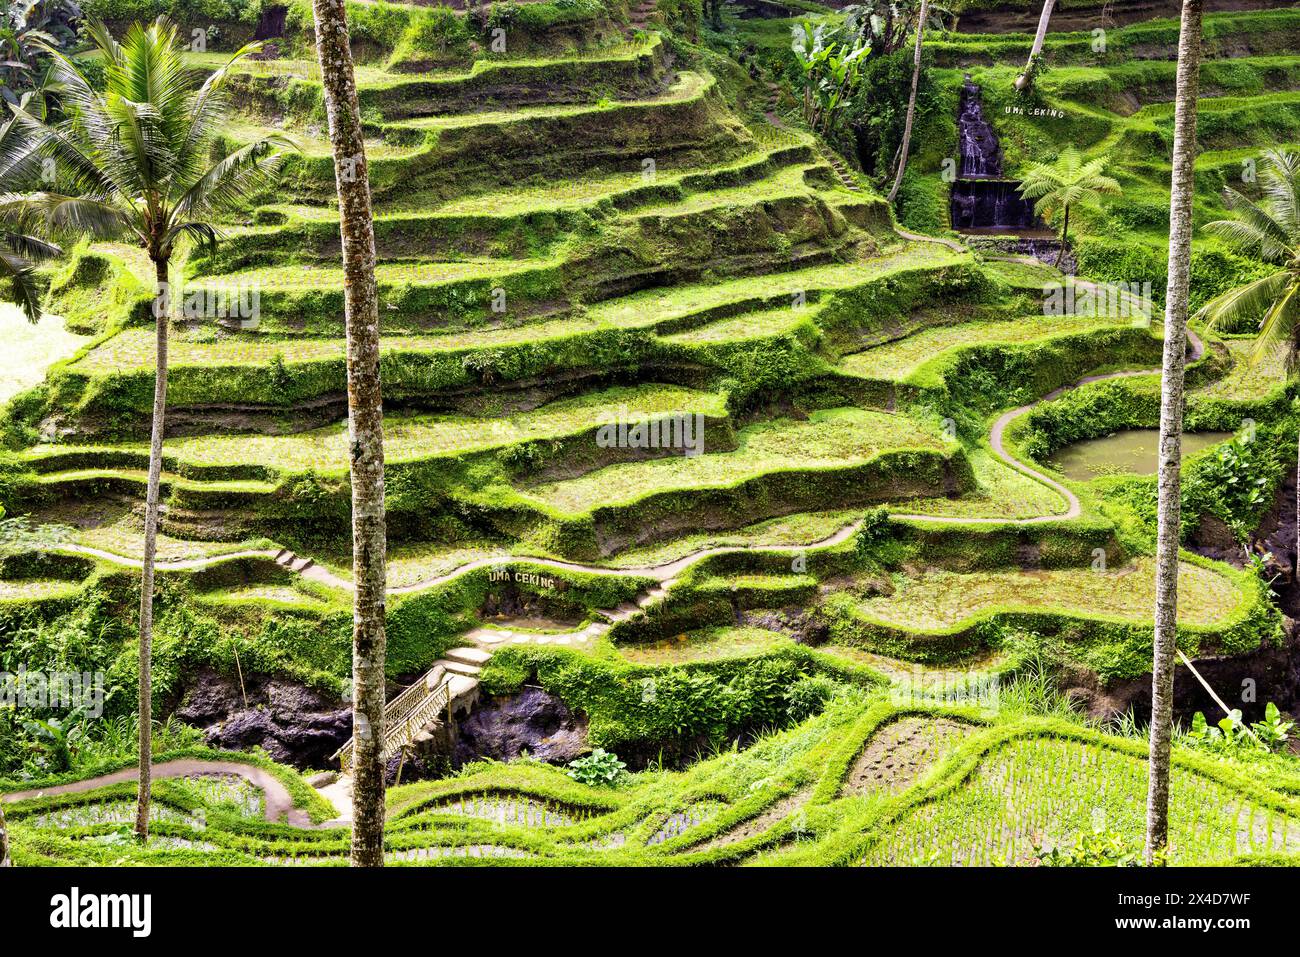 Le magnifiche terrazze di riso di Tegallalang viste dall'alto in una foresta di palme. Camminando tra i tanti livelli incredibili. Foto Stock